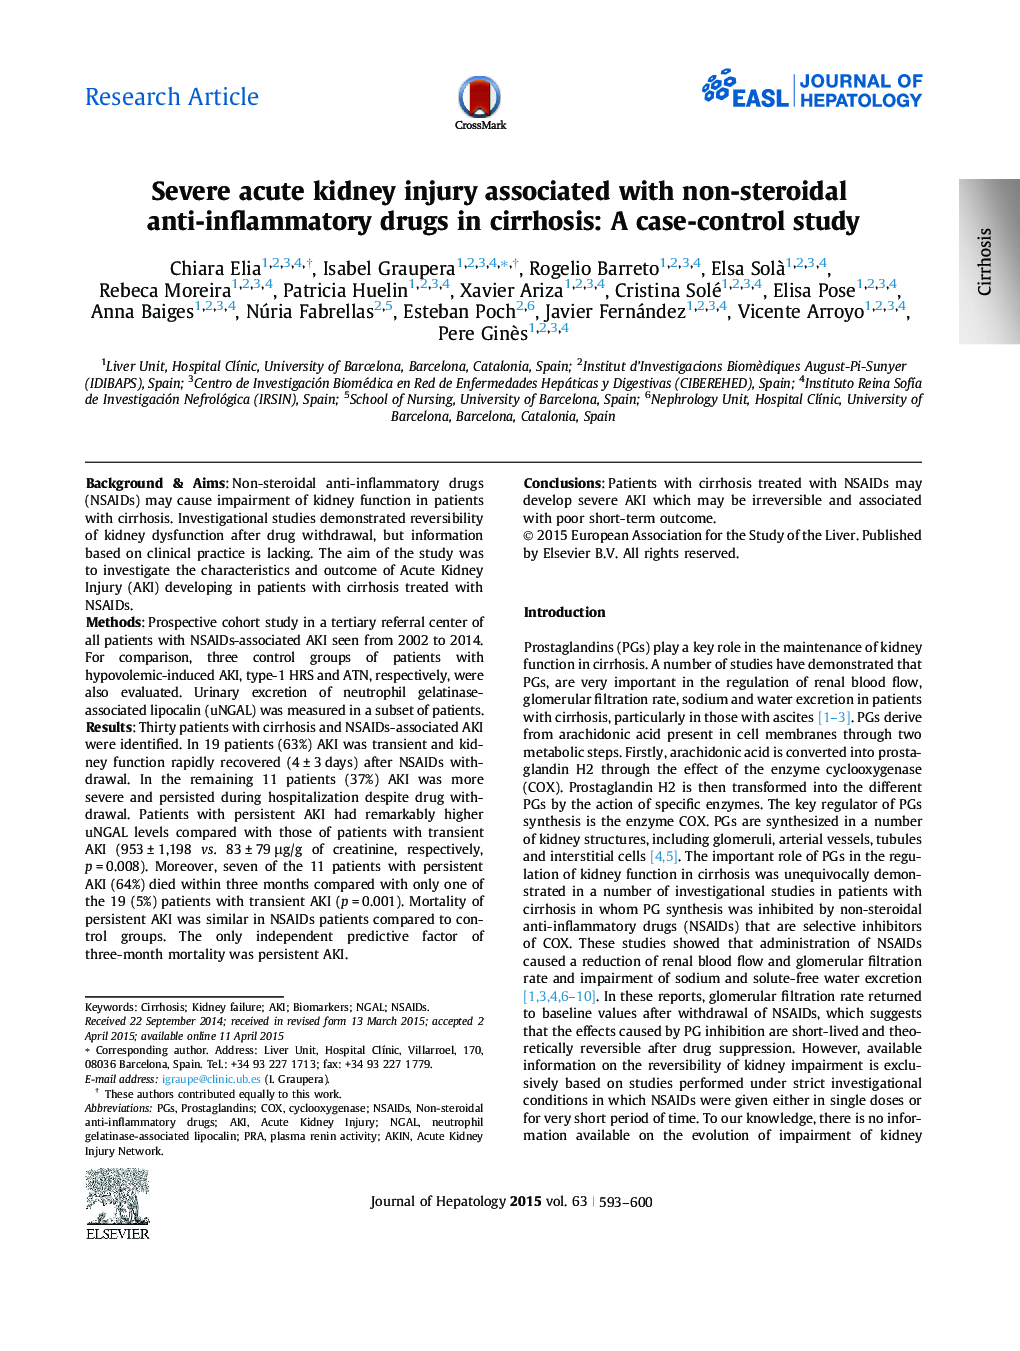 تحقیقات در مورد آسیب حاد کلیه همراه با داروهای ضد التهاب غیراستروئیدی در سیروز: یک مطالعه مورد شاهدی 